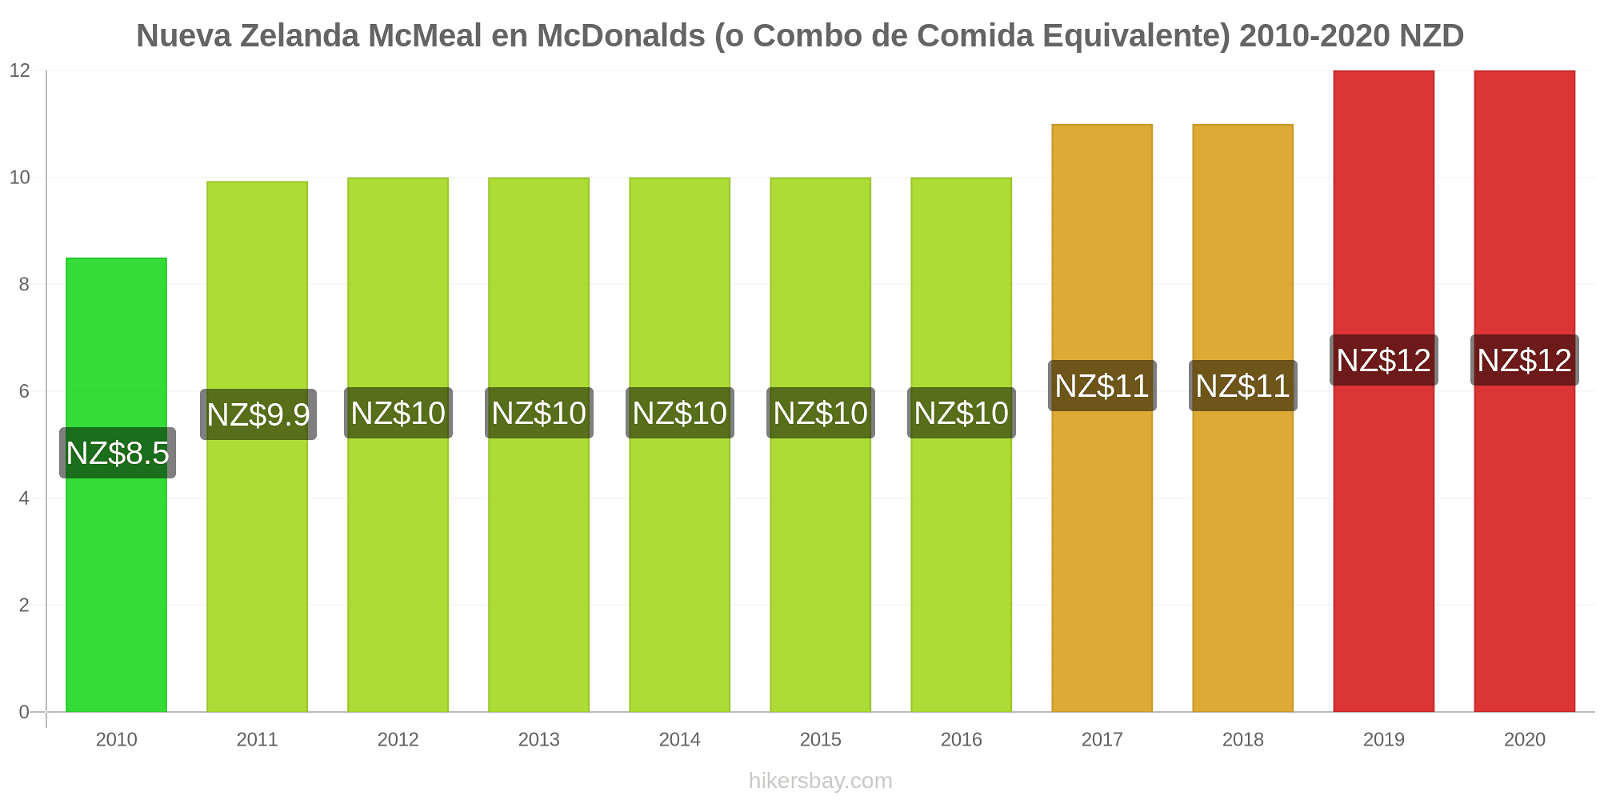 Nueva Zelanda cambios de precios McMeal en McDonalds (o menú equivalente) hikersbay.com